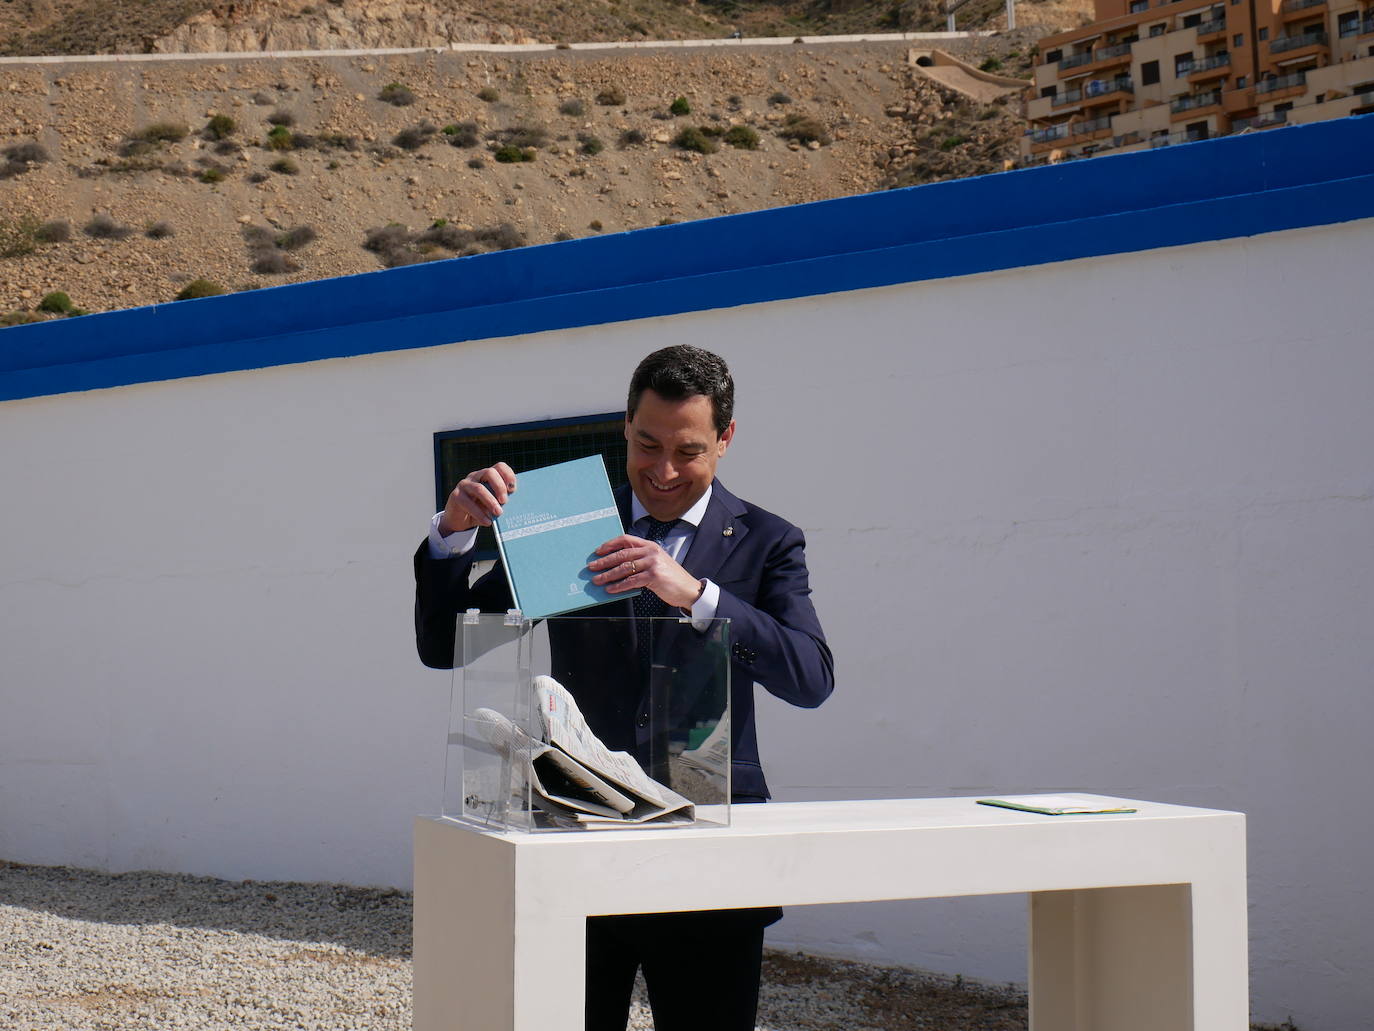 Moreno Bonilla pone la primera piedra de la conexión de Roquetas con la desaladora